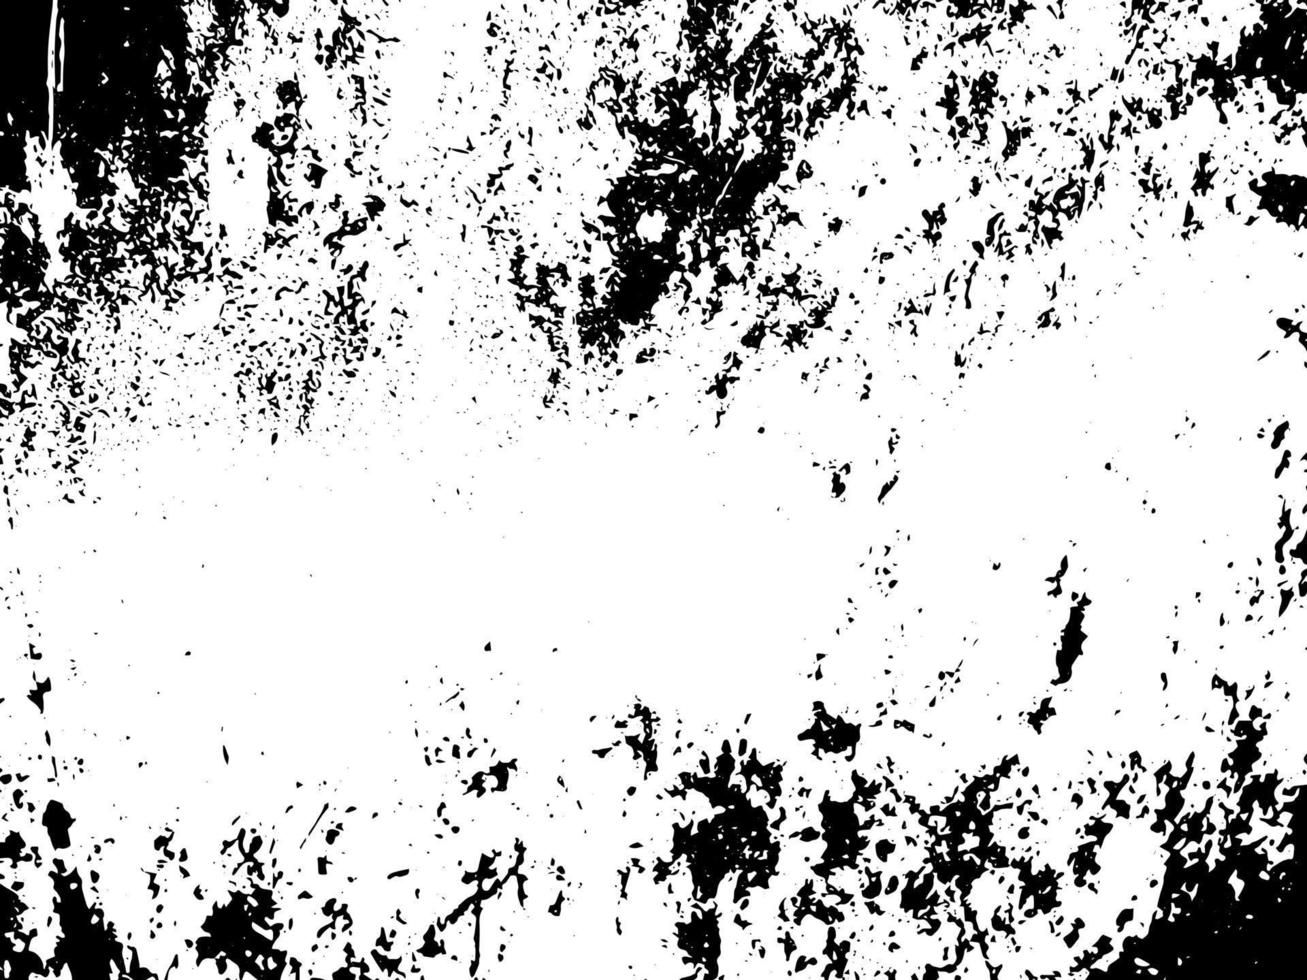 textura de vector grunge rústico con grano y manchas. Fondo de ruido abstracto. superficie degradada. sucio y dañado.